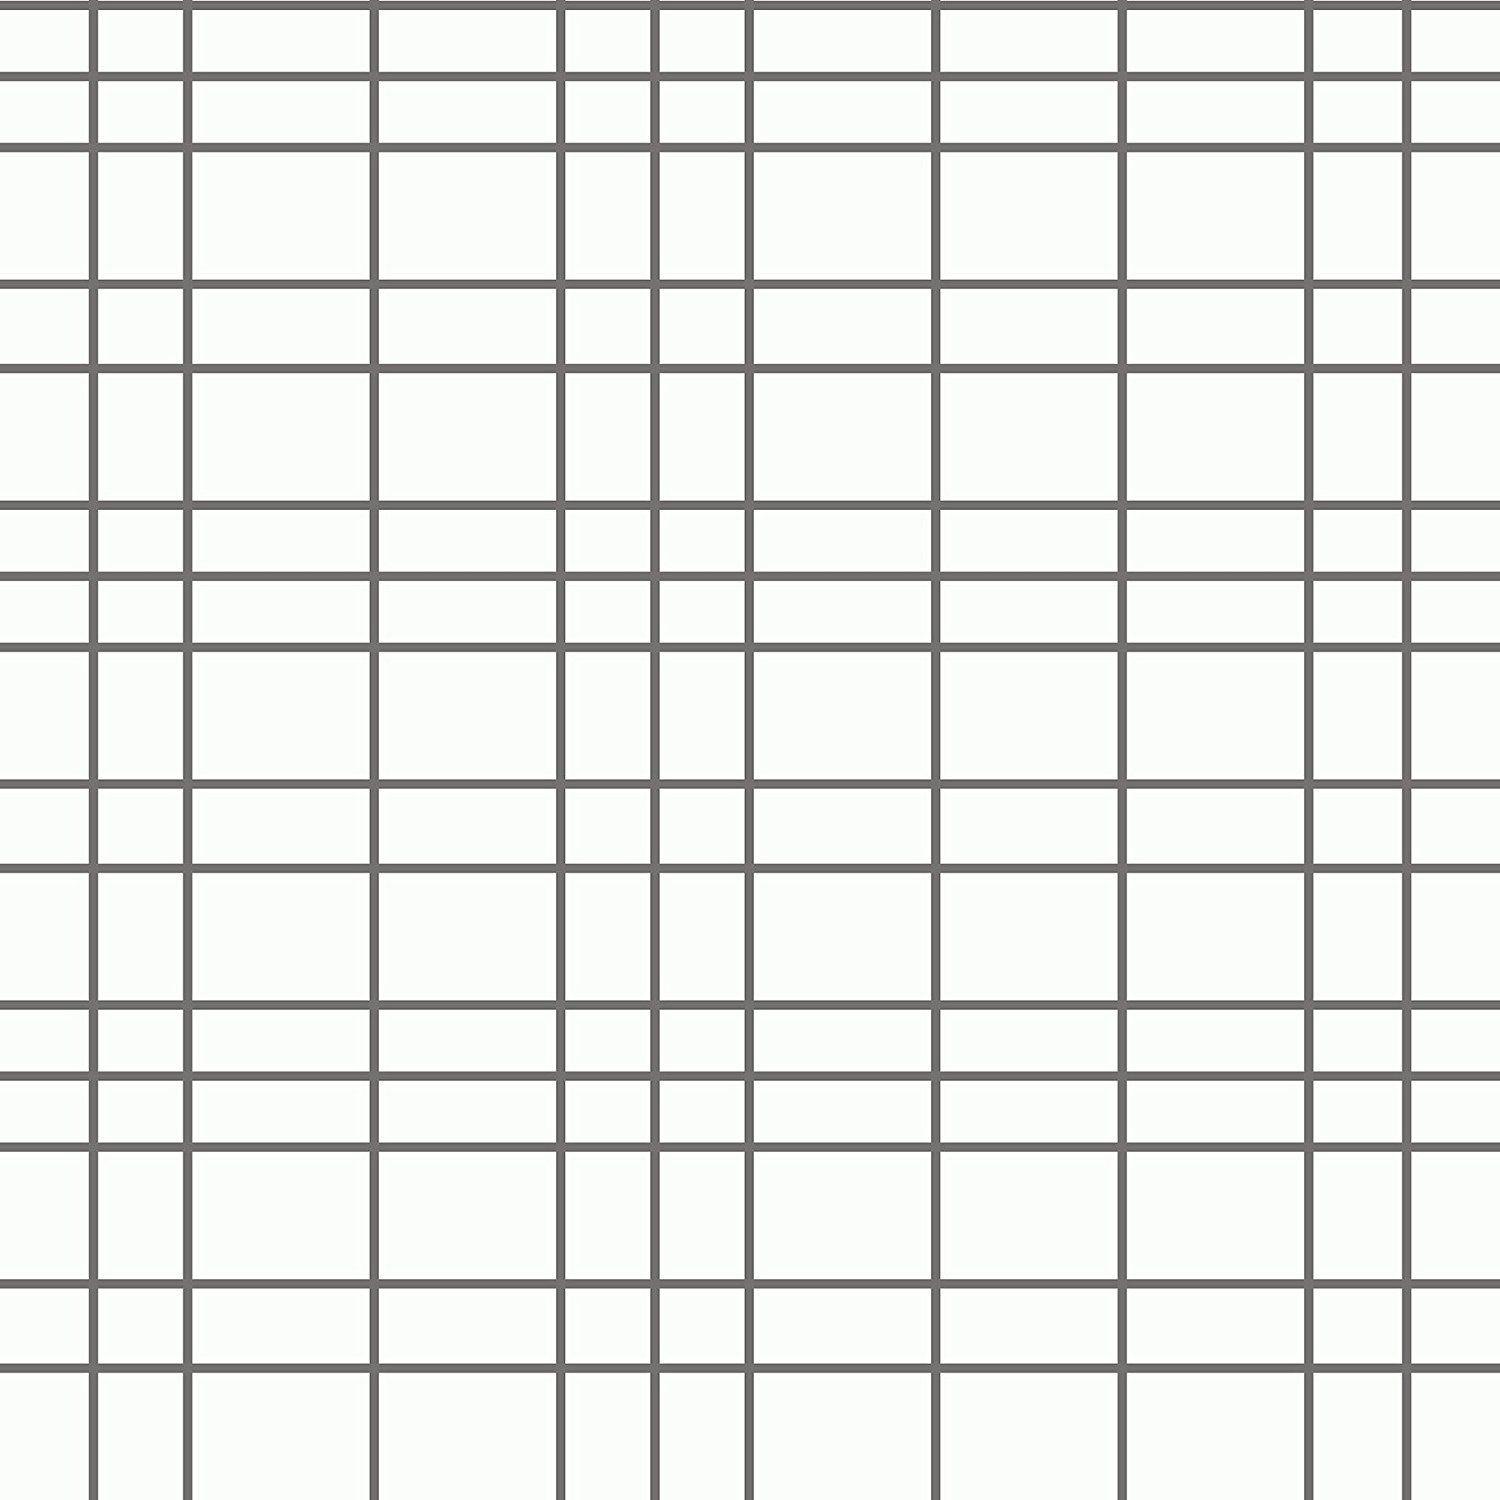 Checkered Wallpapers - Top Những Hình Ảnh Đẹp